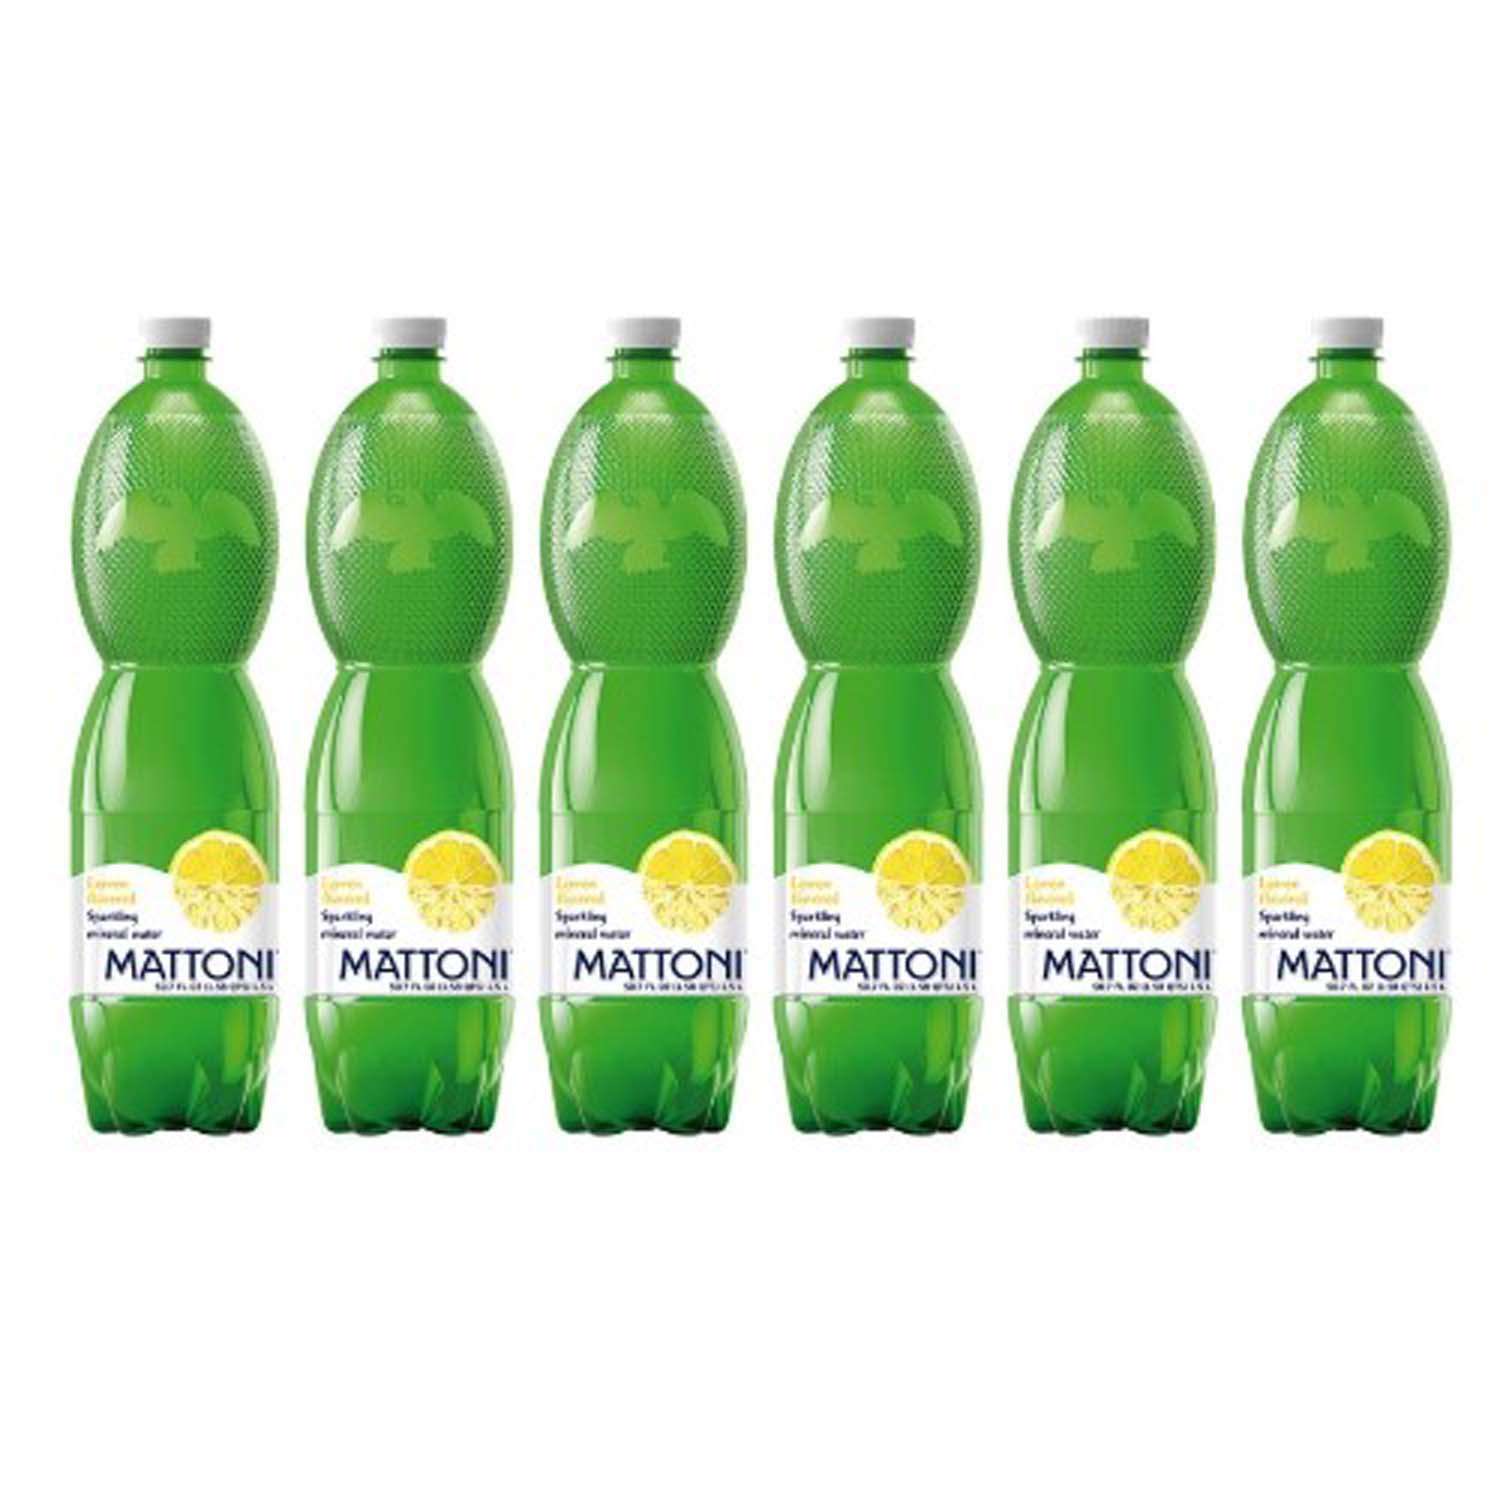 Вода минеральная Mattoni со вкусом лимона 1.5 л 6 шт - фото 2